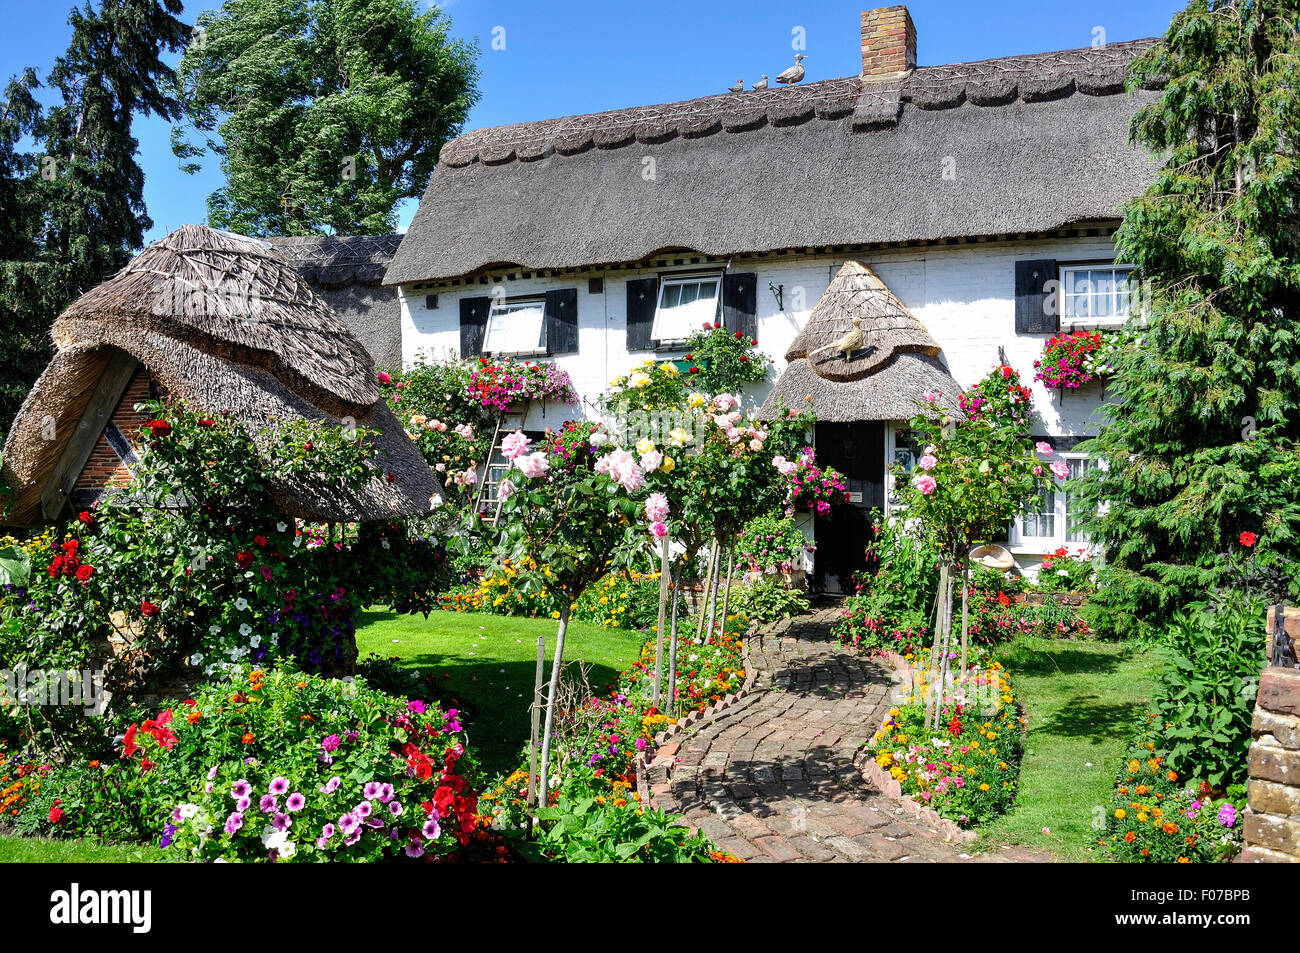 Graziosi cottage con tetto in paglia e giardino, Longford Village, London Borough of Hillingdon, Greater London, England, Regno Unito Foto Stock